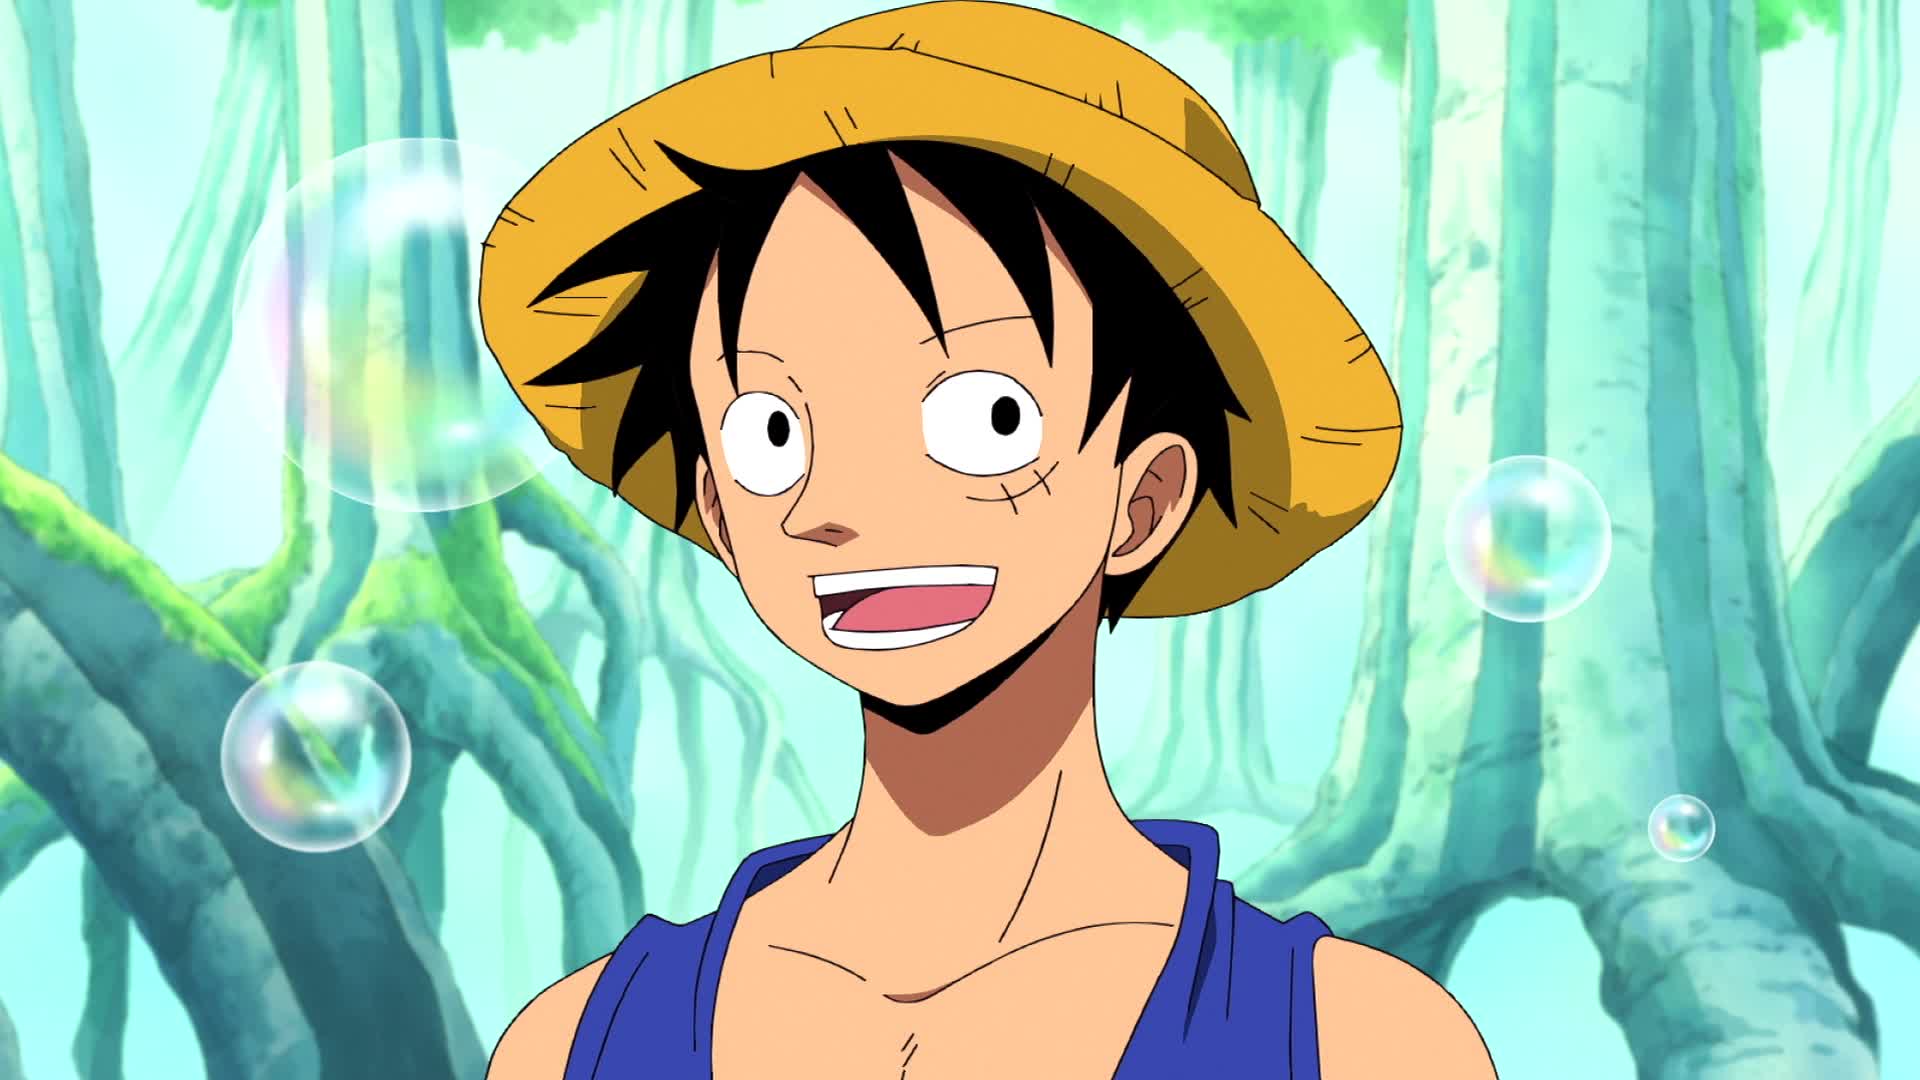 One Piece: novos episódios estreiam na Netflix – ANMTV